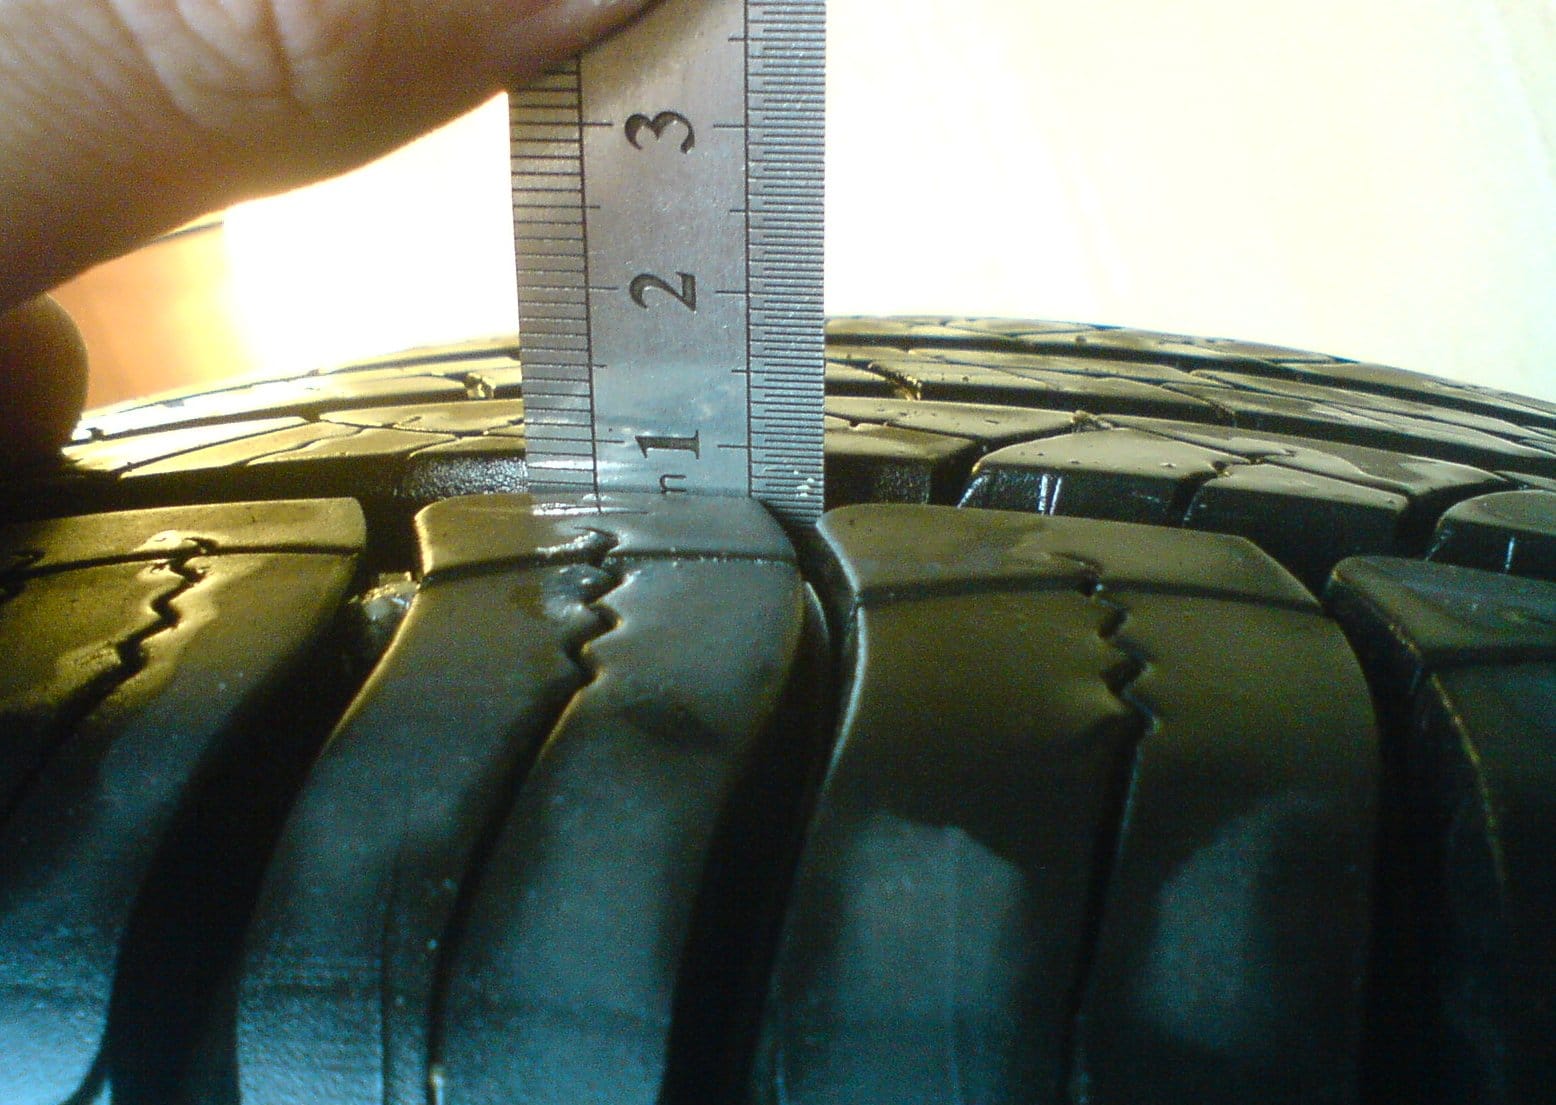 Остаточная глубина протектора шины: когда менять резину?